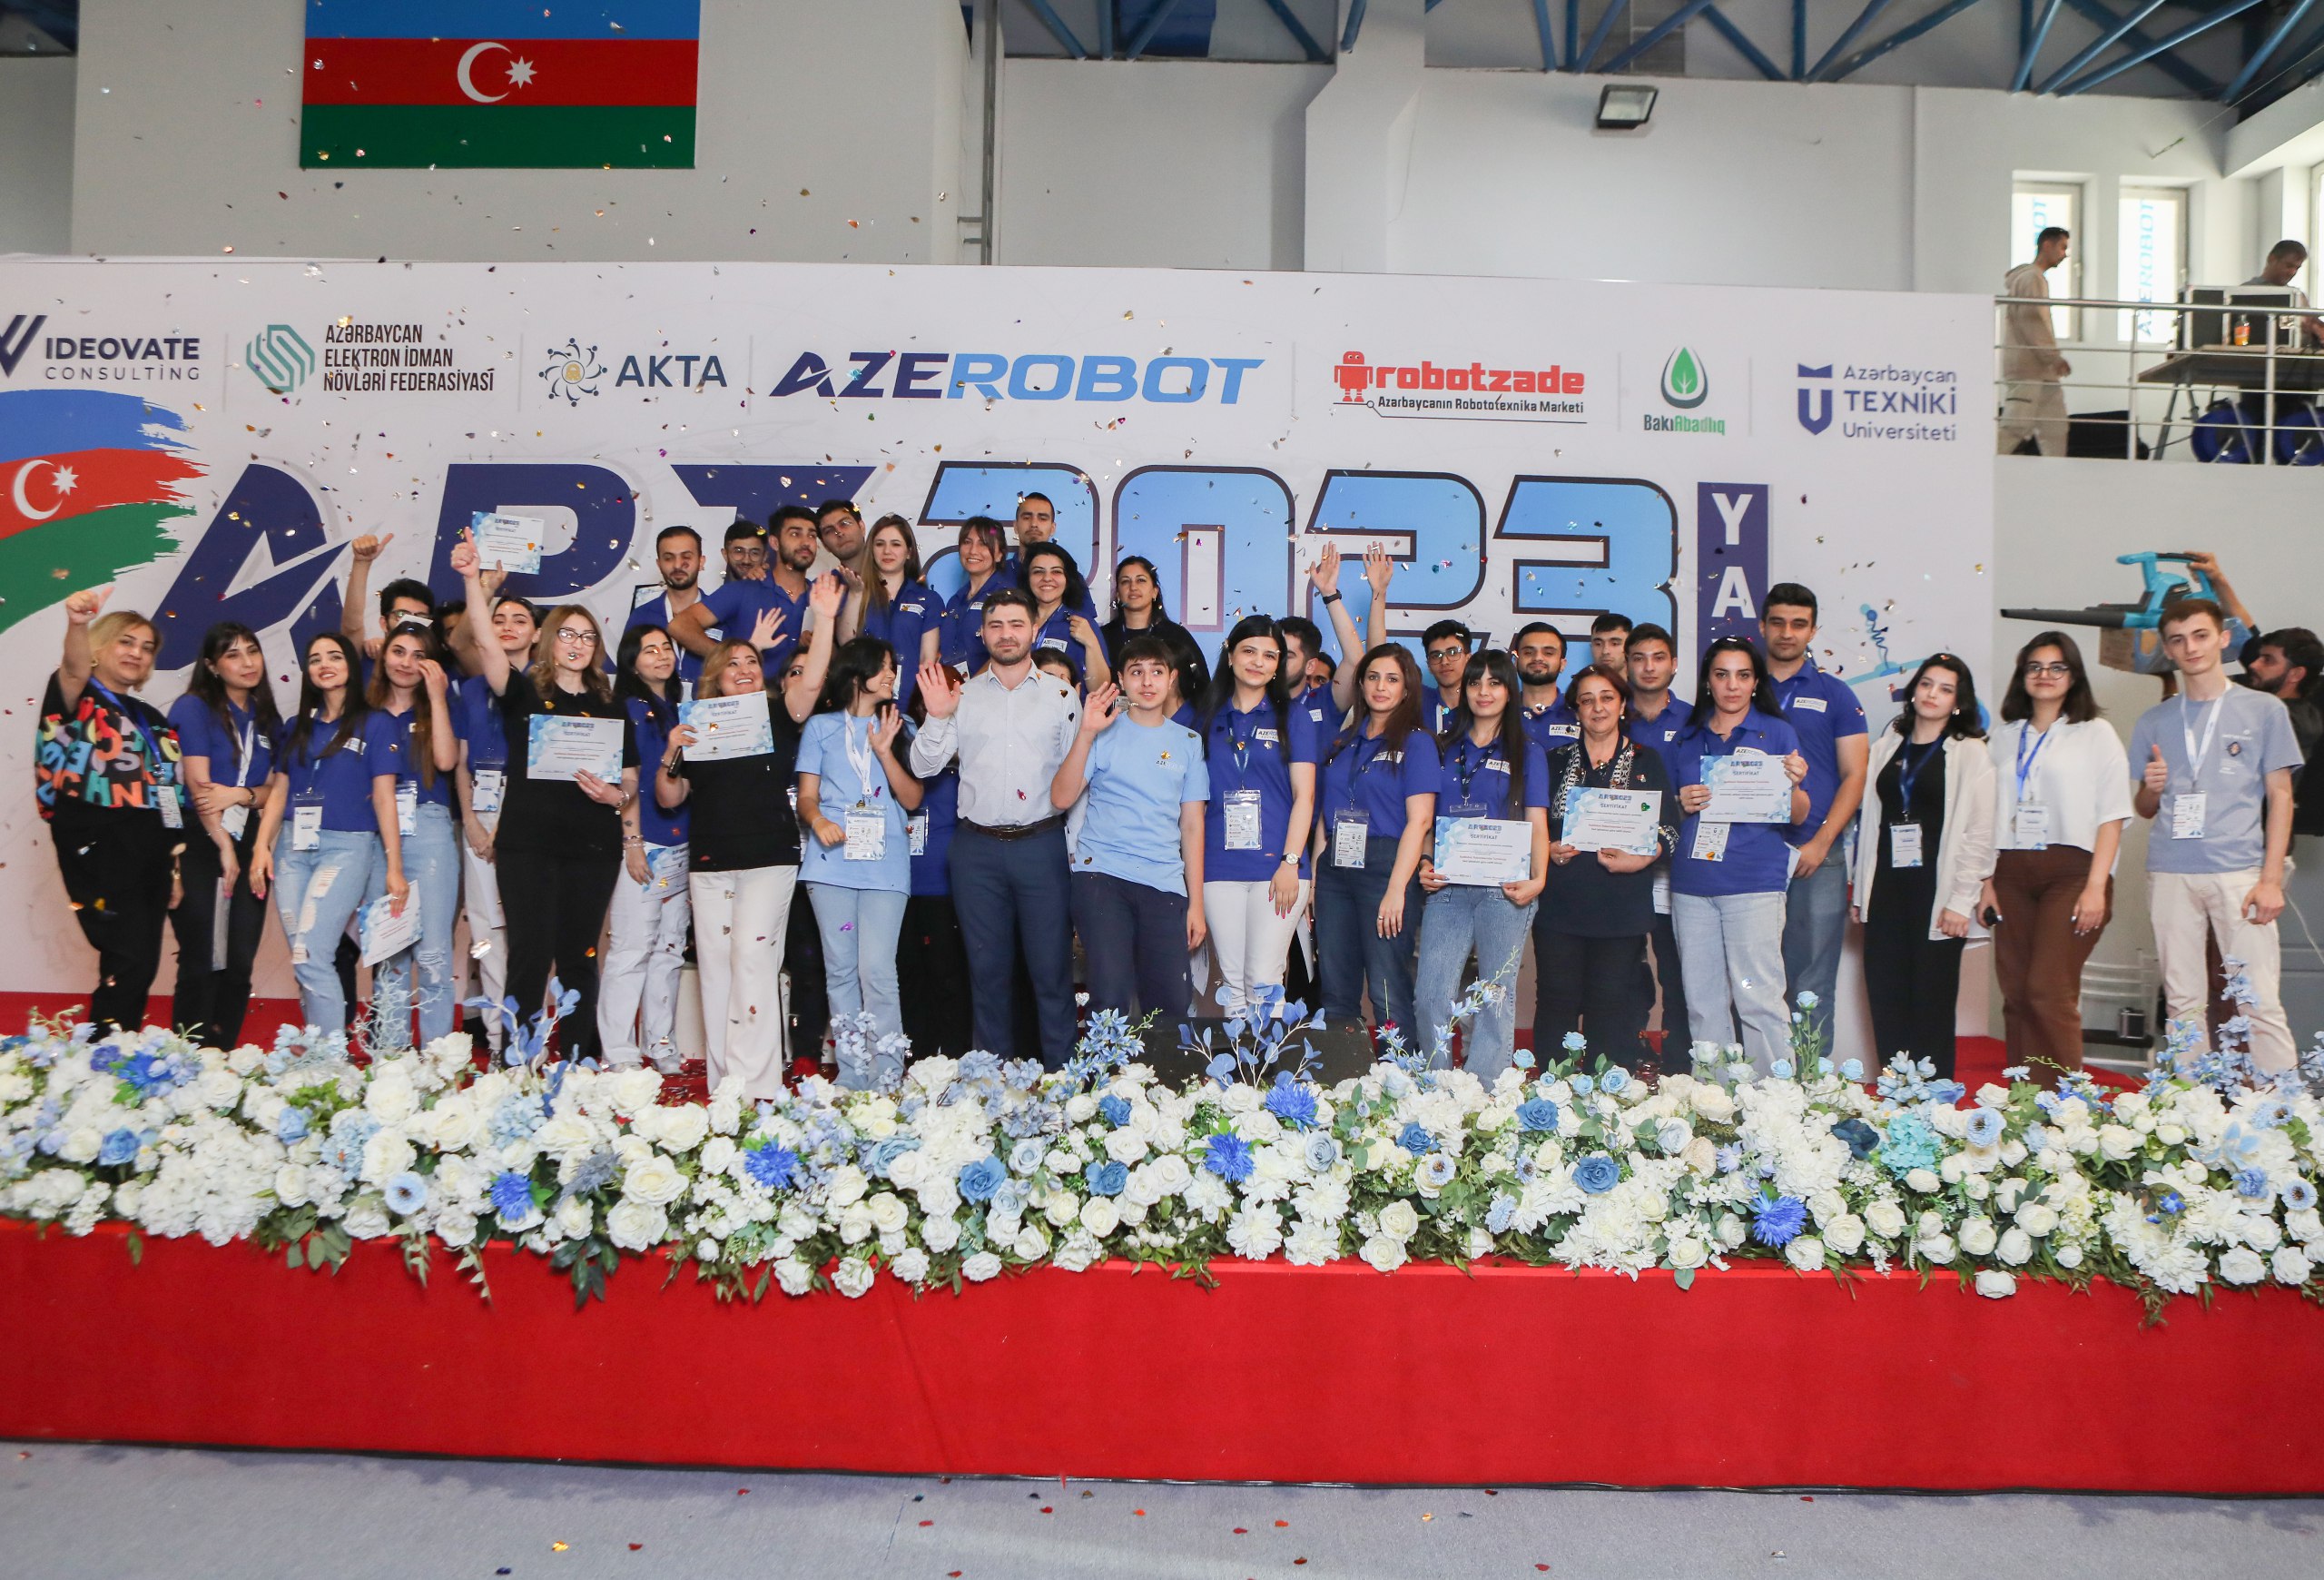 AzeRobot education robototexnika təhsil mərkəzinin təşkilatçılığı ilə ART 2023 YAY robototexnika və mühəndislik turniri keçirildi.